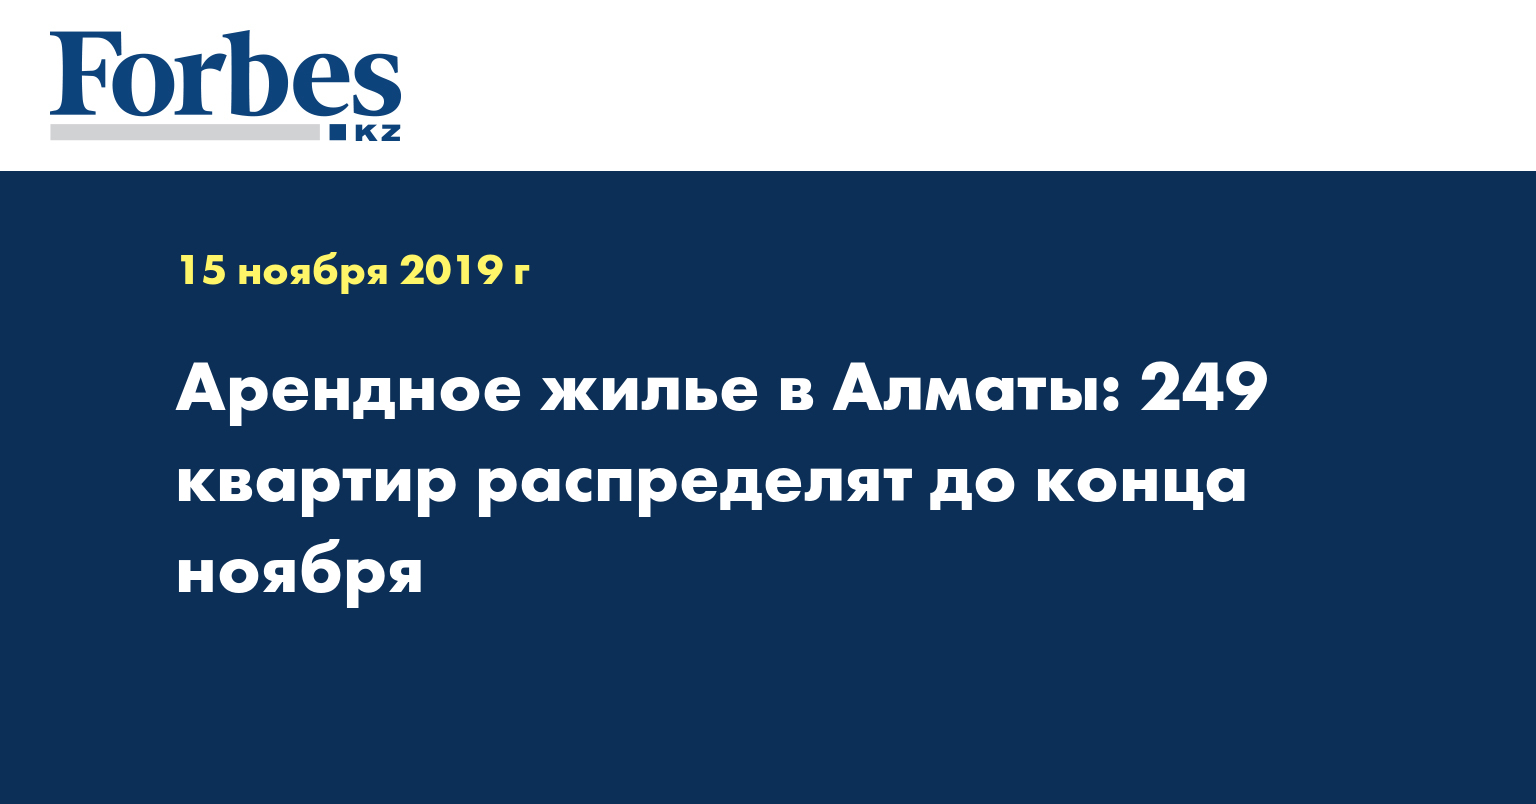 Арендное жилье в Алматы: 249 квартир распределят до конца ноября